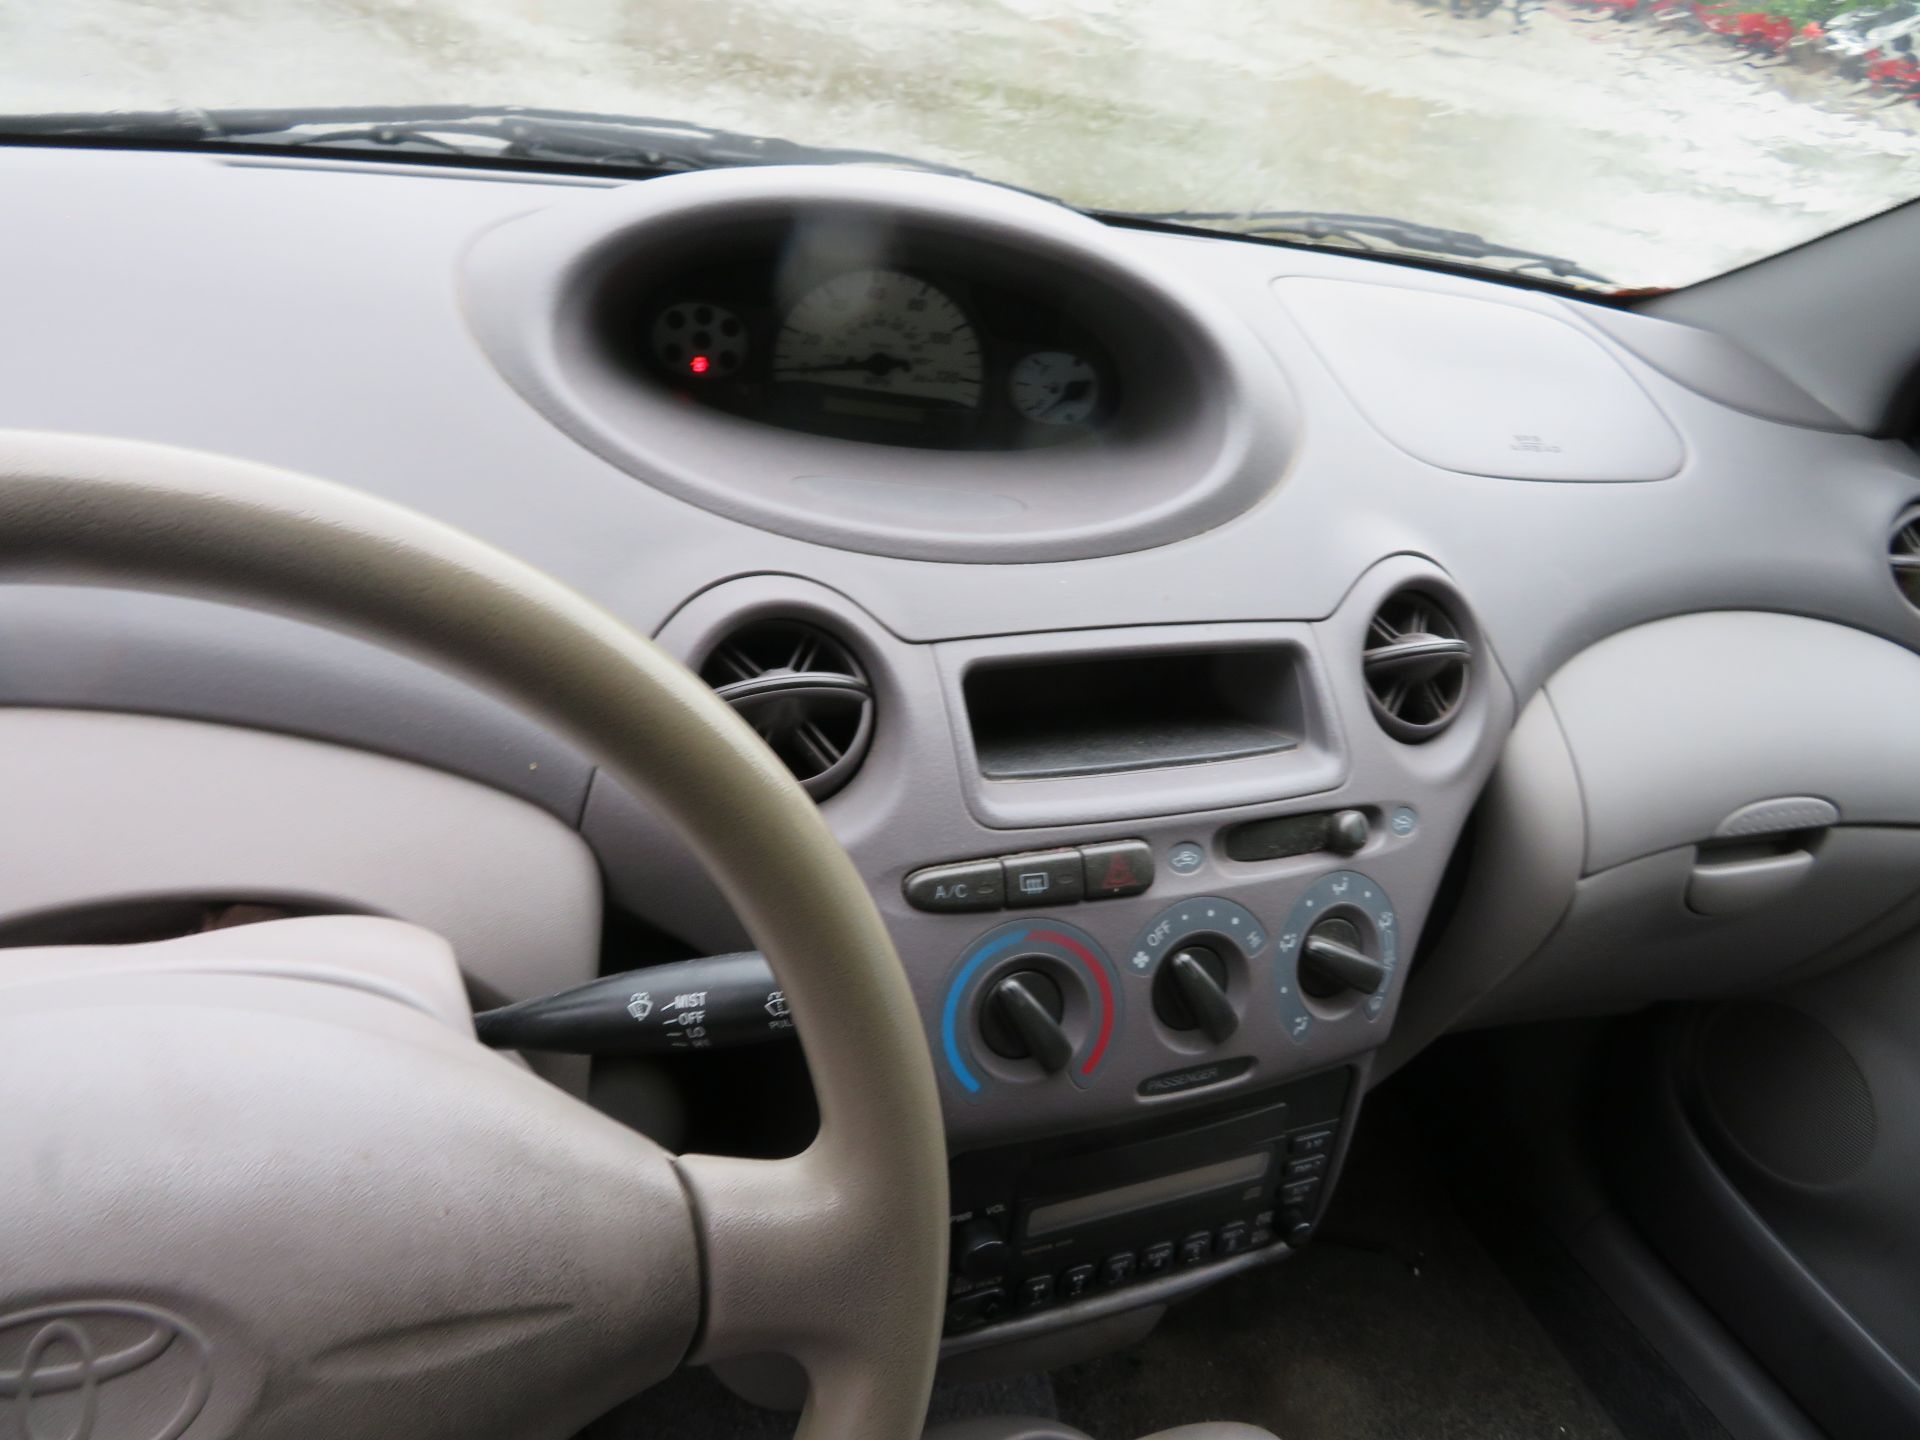 2002 Toyota Echo 2-Door, VIN JTDAT123820214374, 113,787 Indicated Miles - Bild 6 aus 7